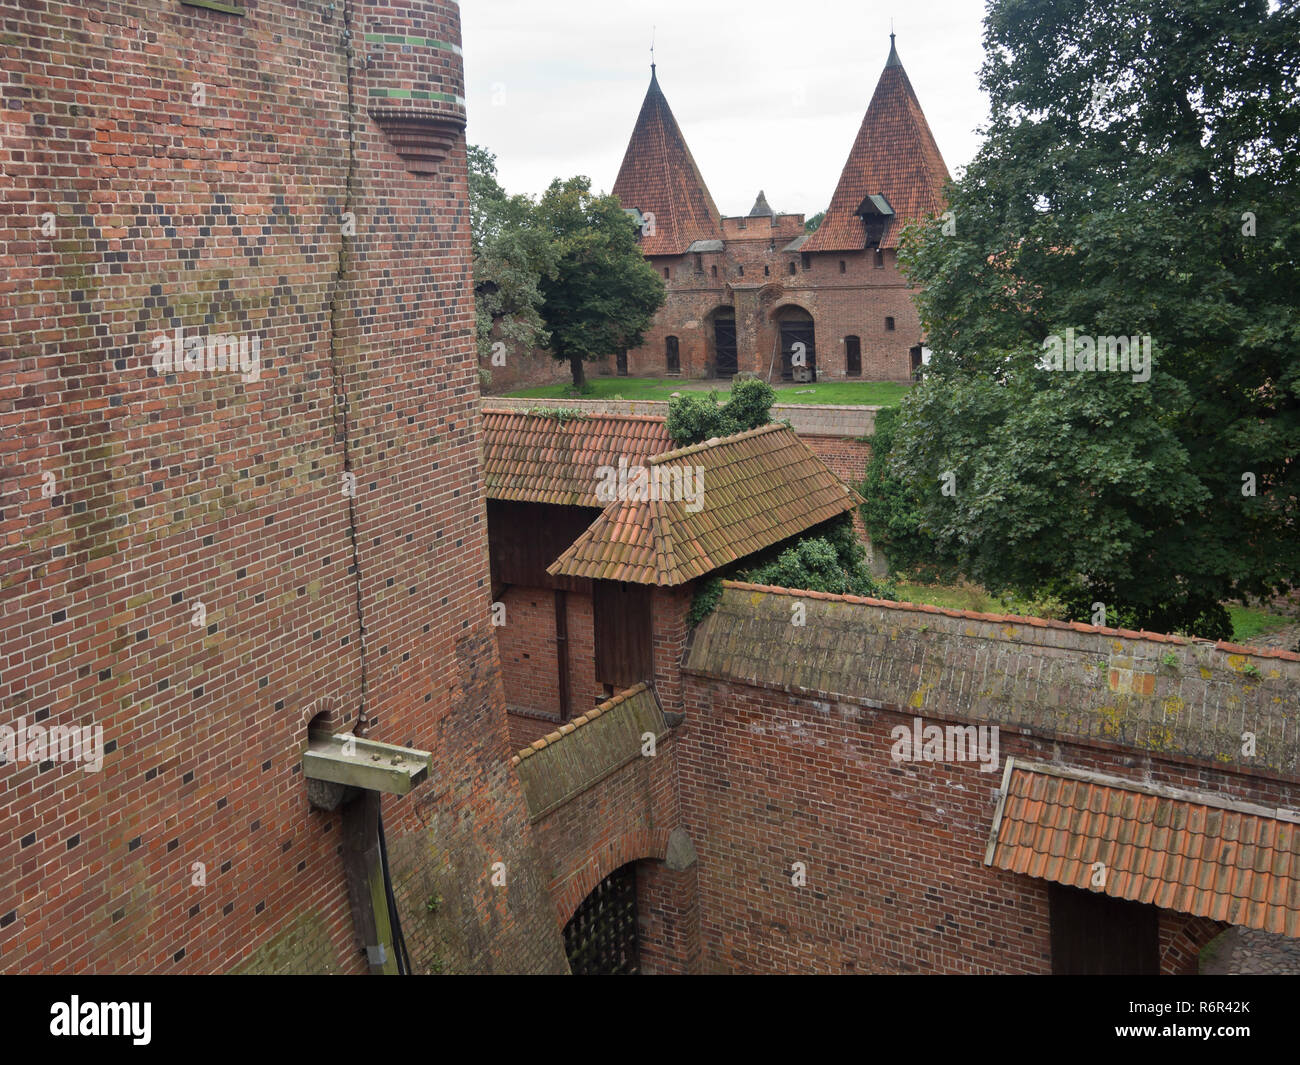 Château de Malbork, Site du patrimoine mondial de l'UNESCO à Malbork Pologne construit par en rouge brique par l'Ordre Teutonique, vue extérieure des murs enchevêtrés Banque D'Images